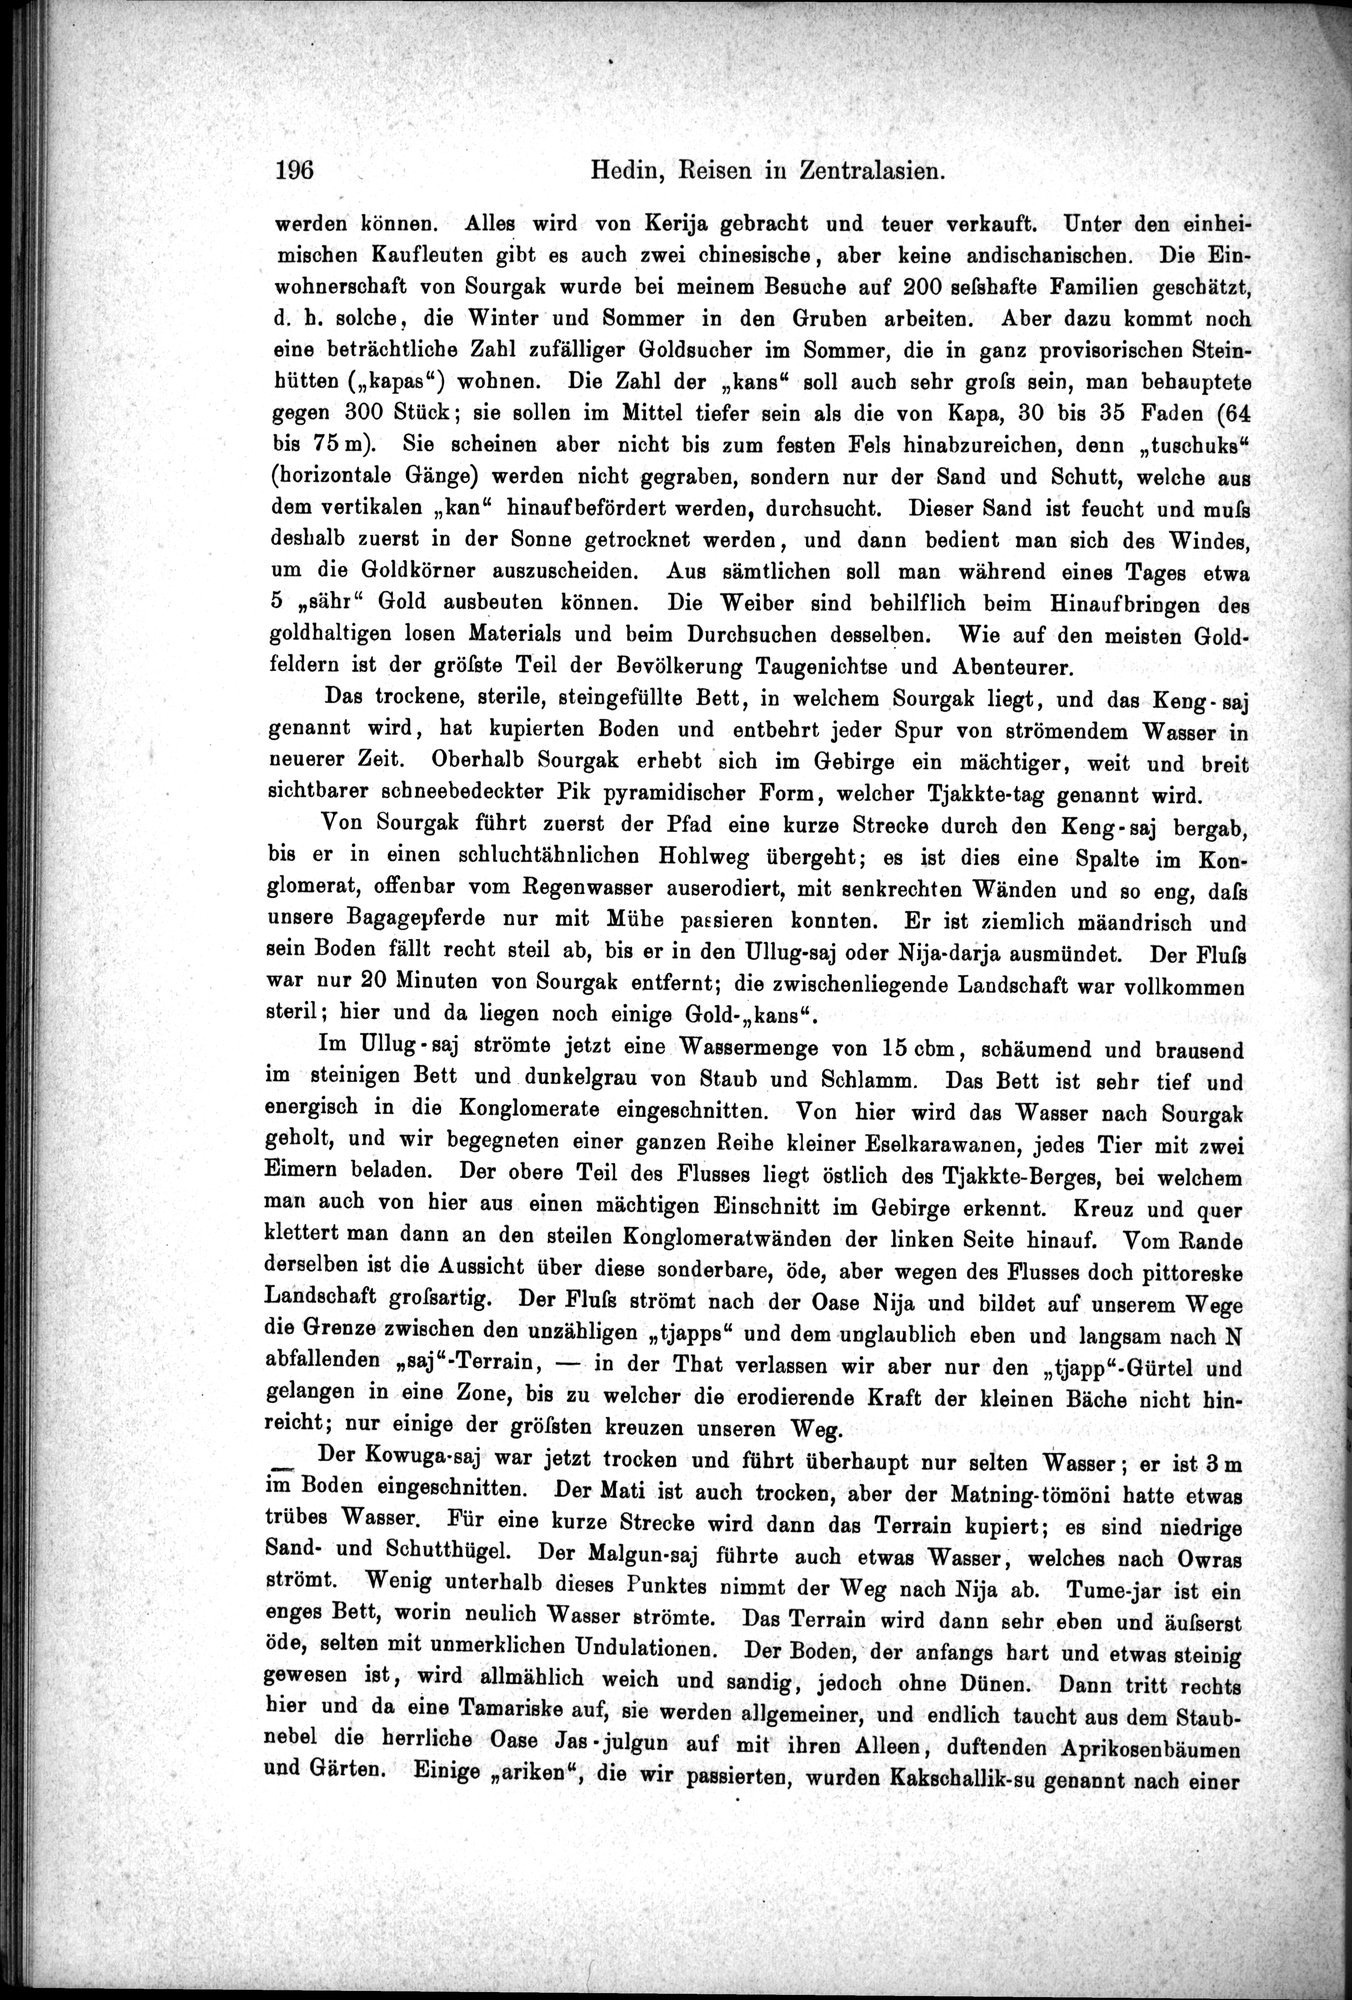 Die Geographische-Wissenschaftlichen Ergebnisse meiner Reisen in Zentralasien, 1894-1897 : vol.1 / Page 208 (Grayscale High Resolution Image)